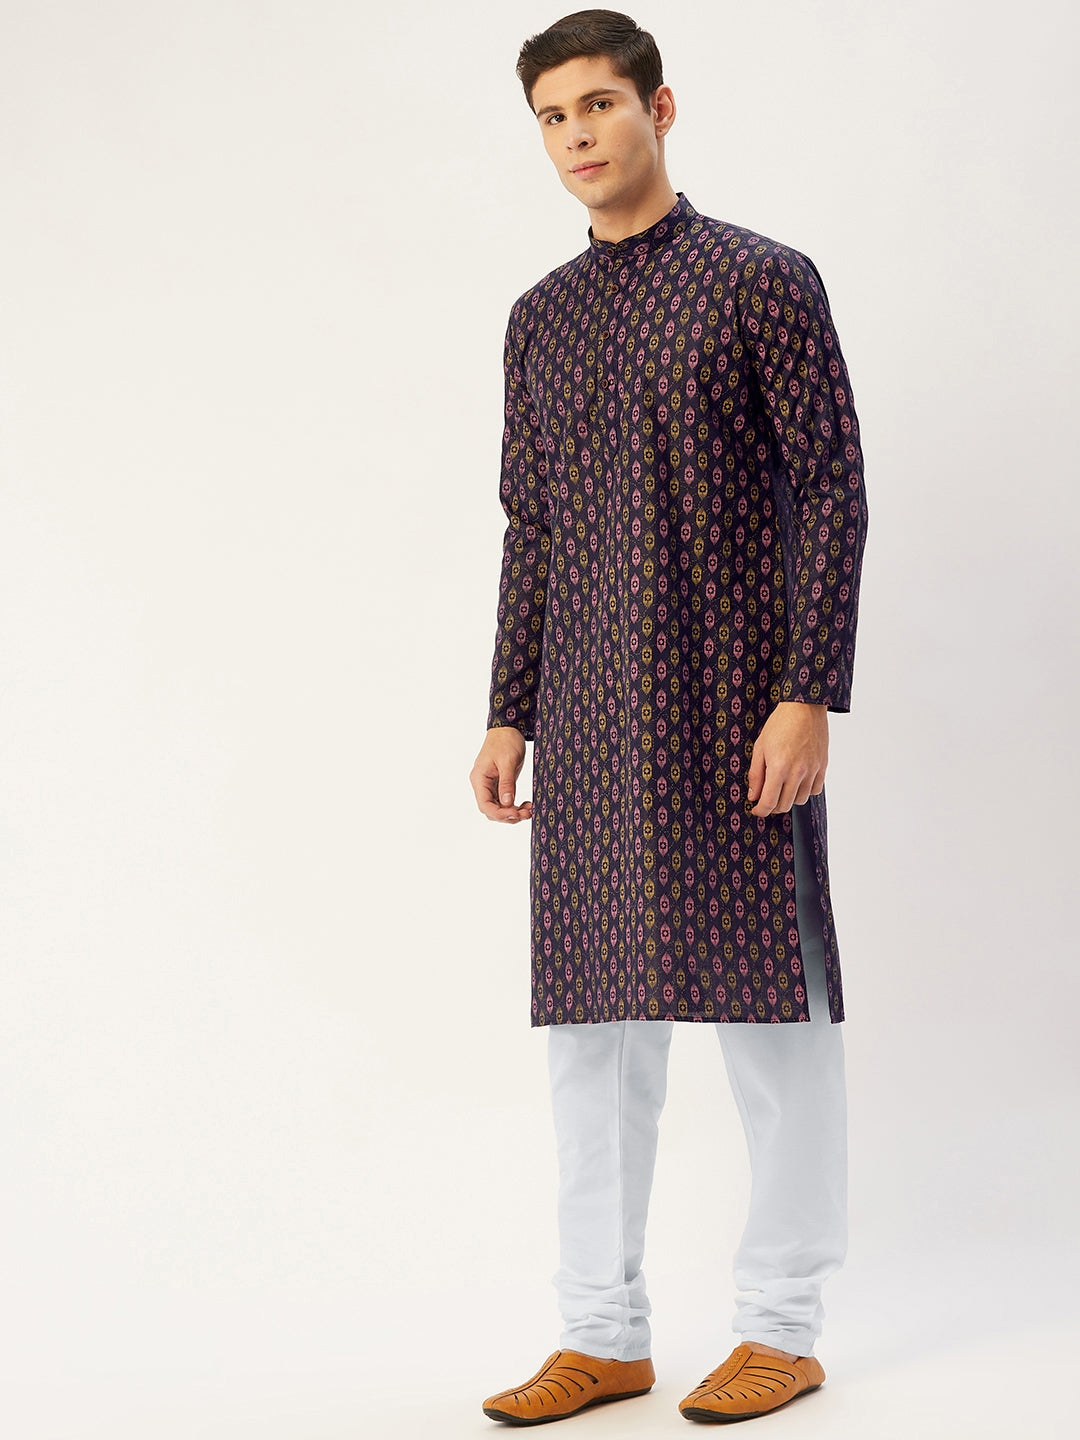 Men's Navy Cotton Ikat printed kurta Pyjama Set ( JOKP 651 Navy ) - Virat Fashions